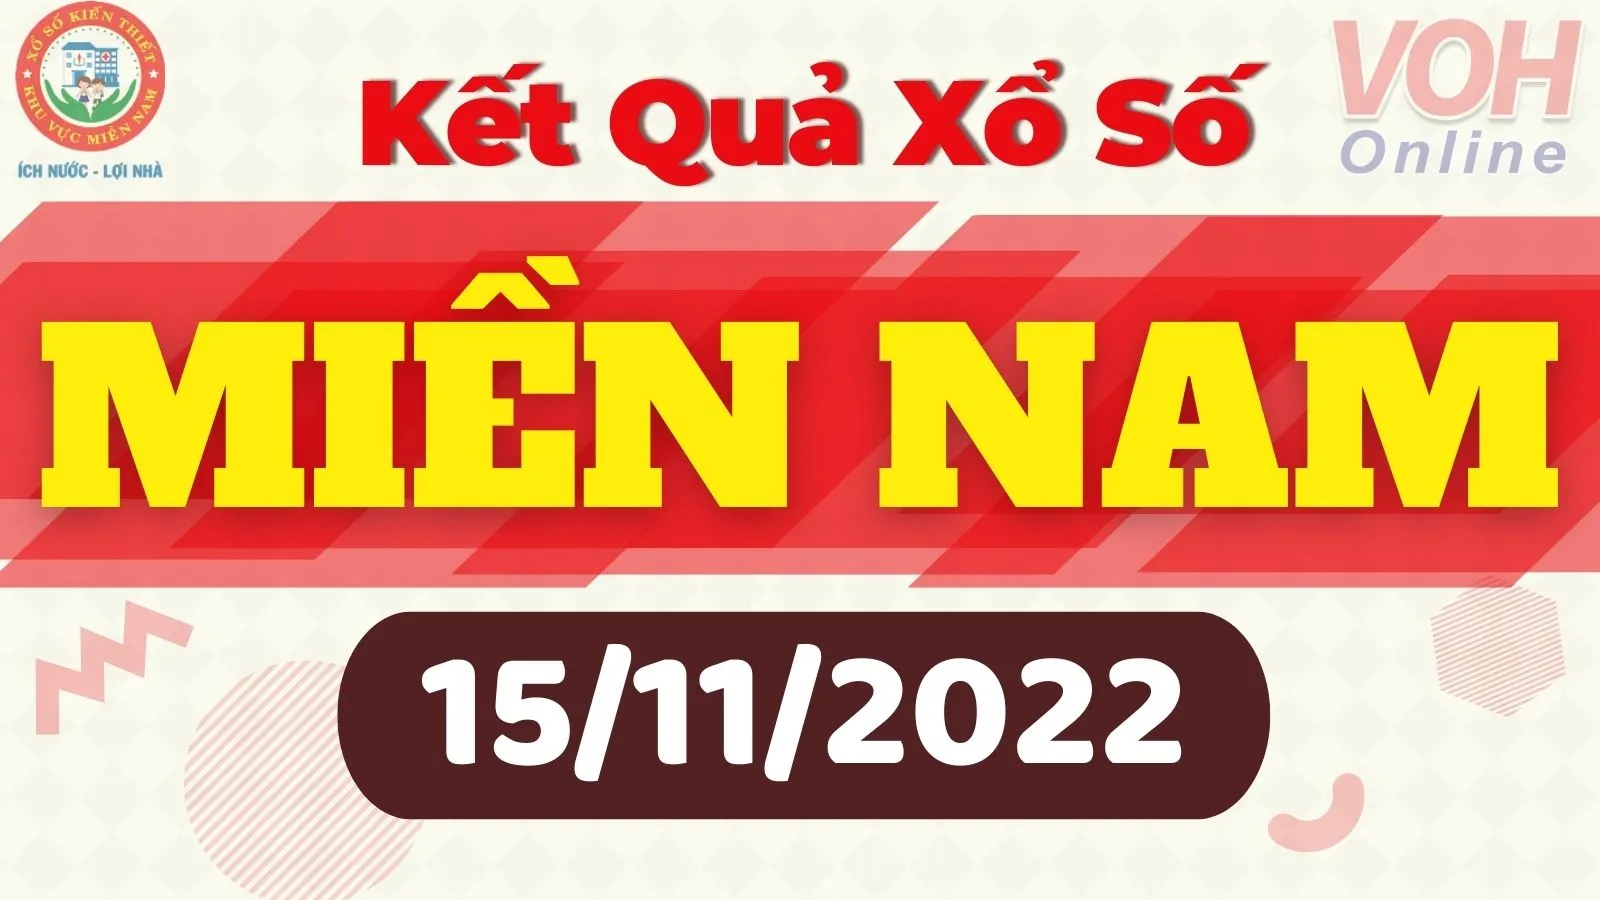 Xổ số miền Nam hôm nay - XSMN 15/11 - SXMN 15/11/2022 - Kết quả xổ số hôm nay ngày 15 tháng 11